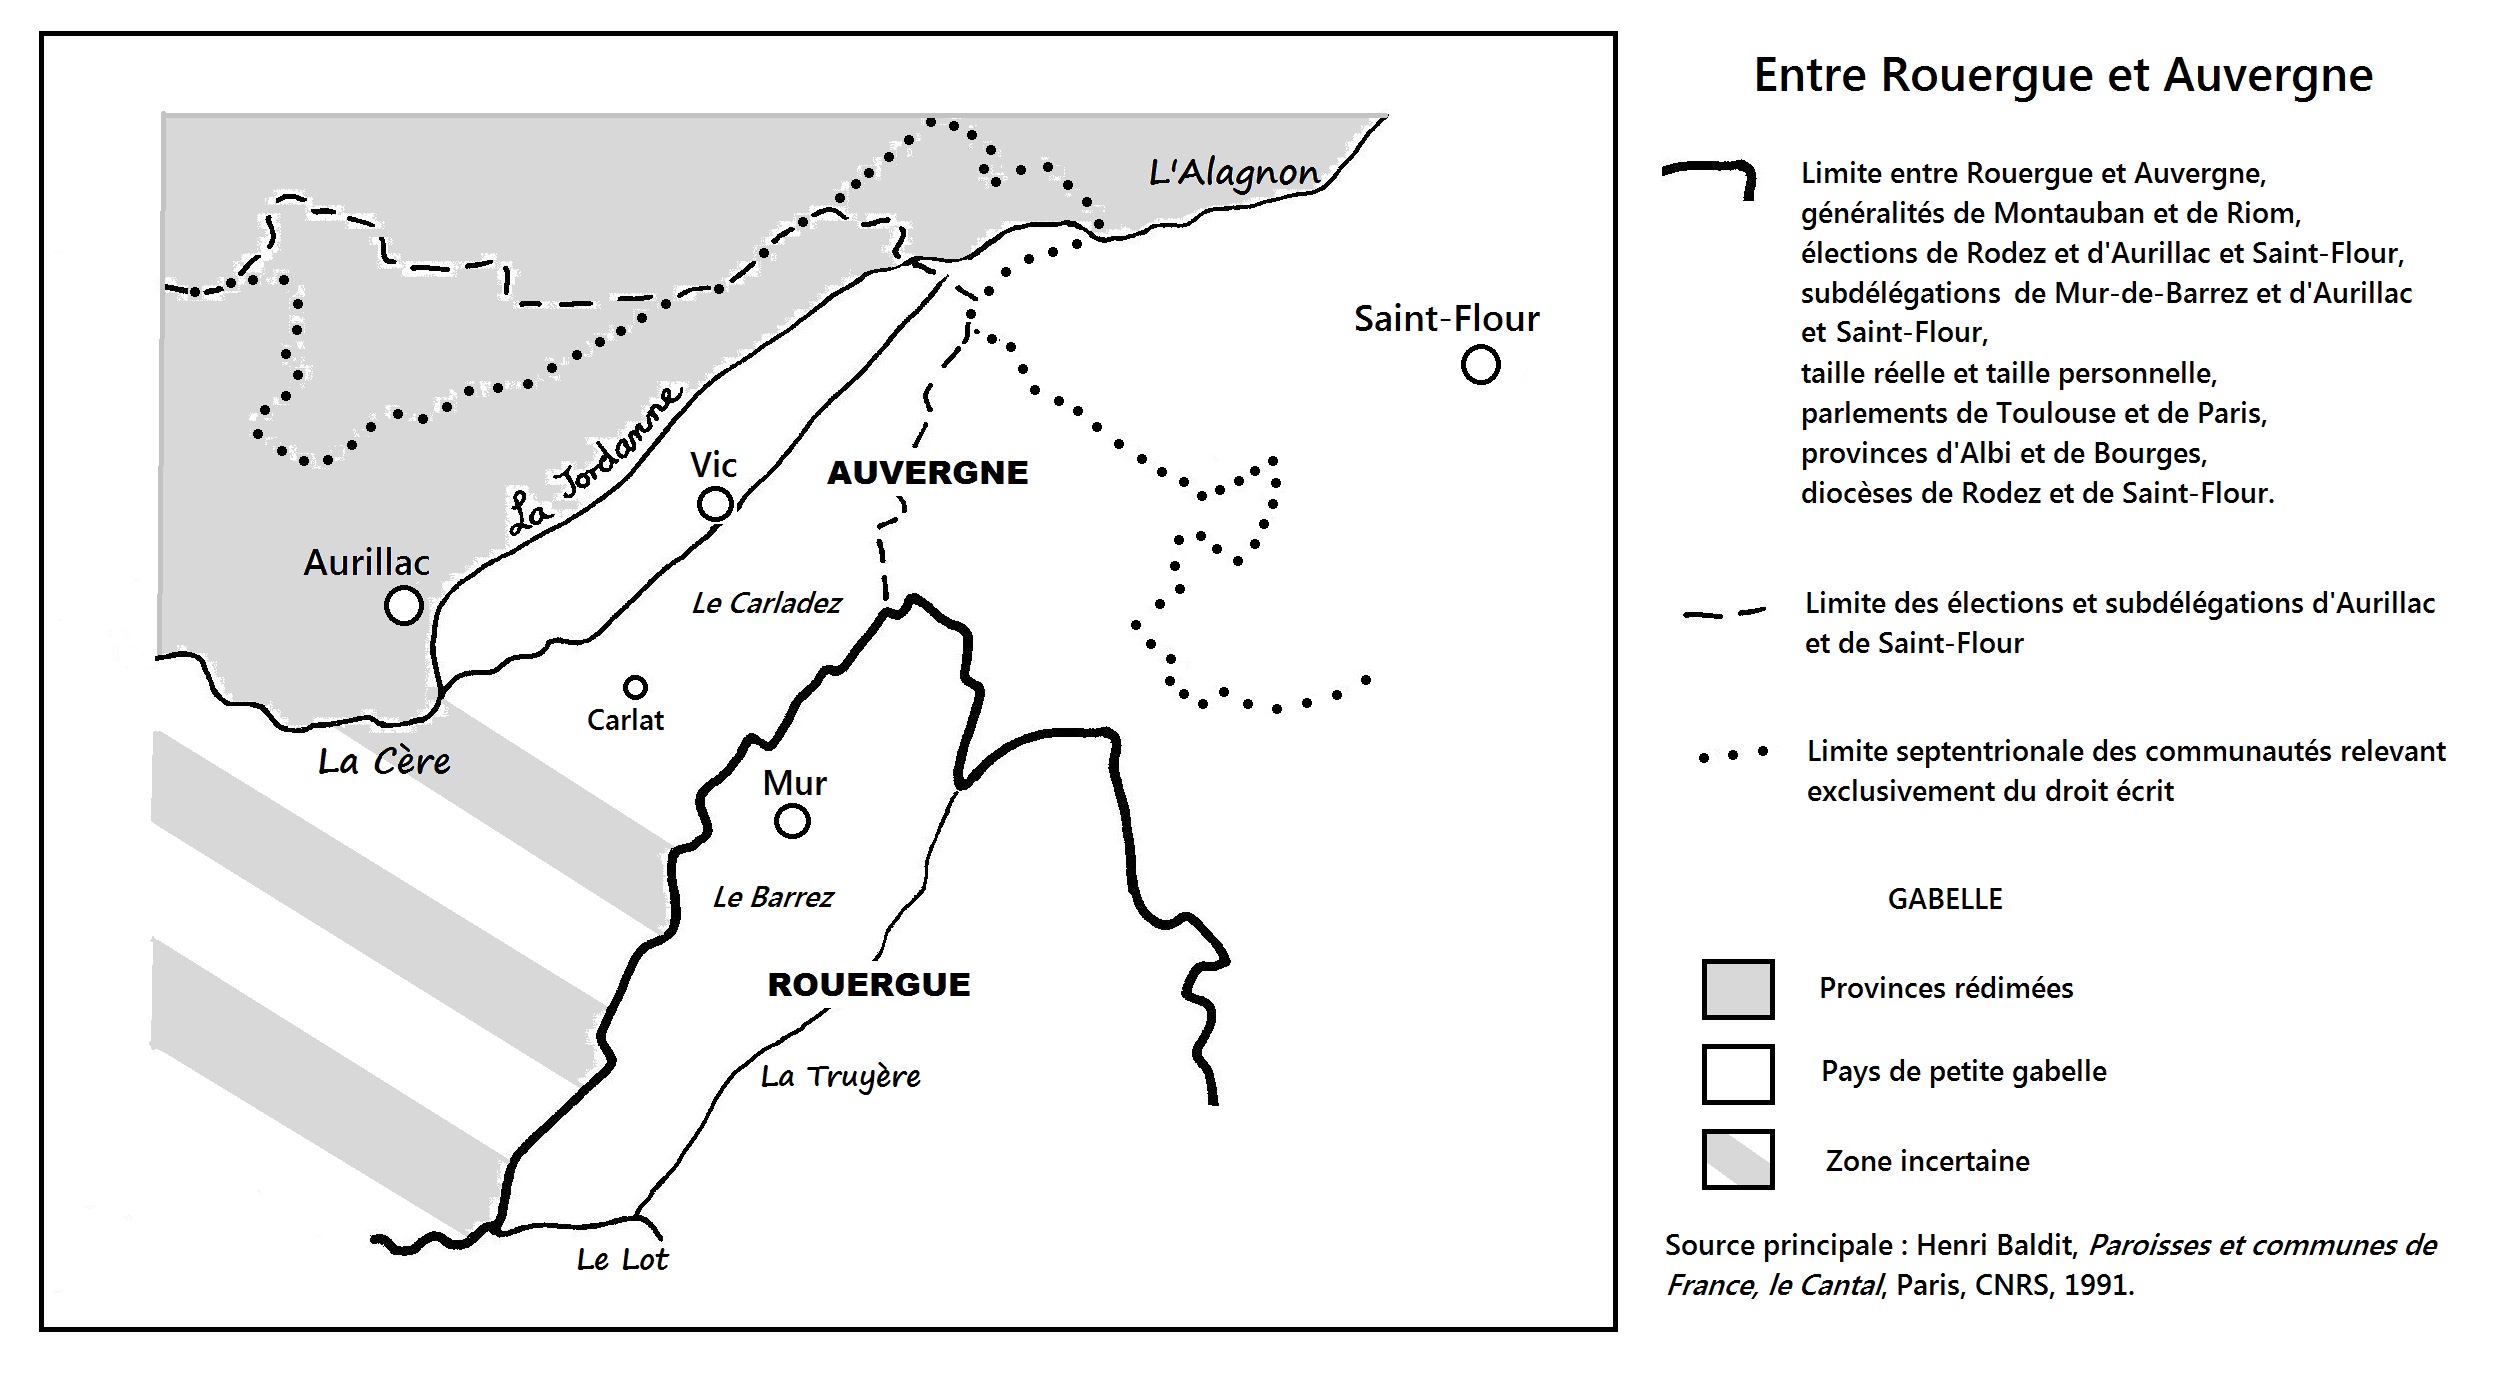 Rouergue et Auvergne 001.jpg